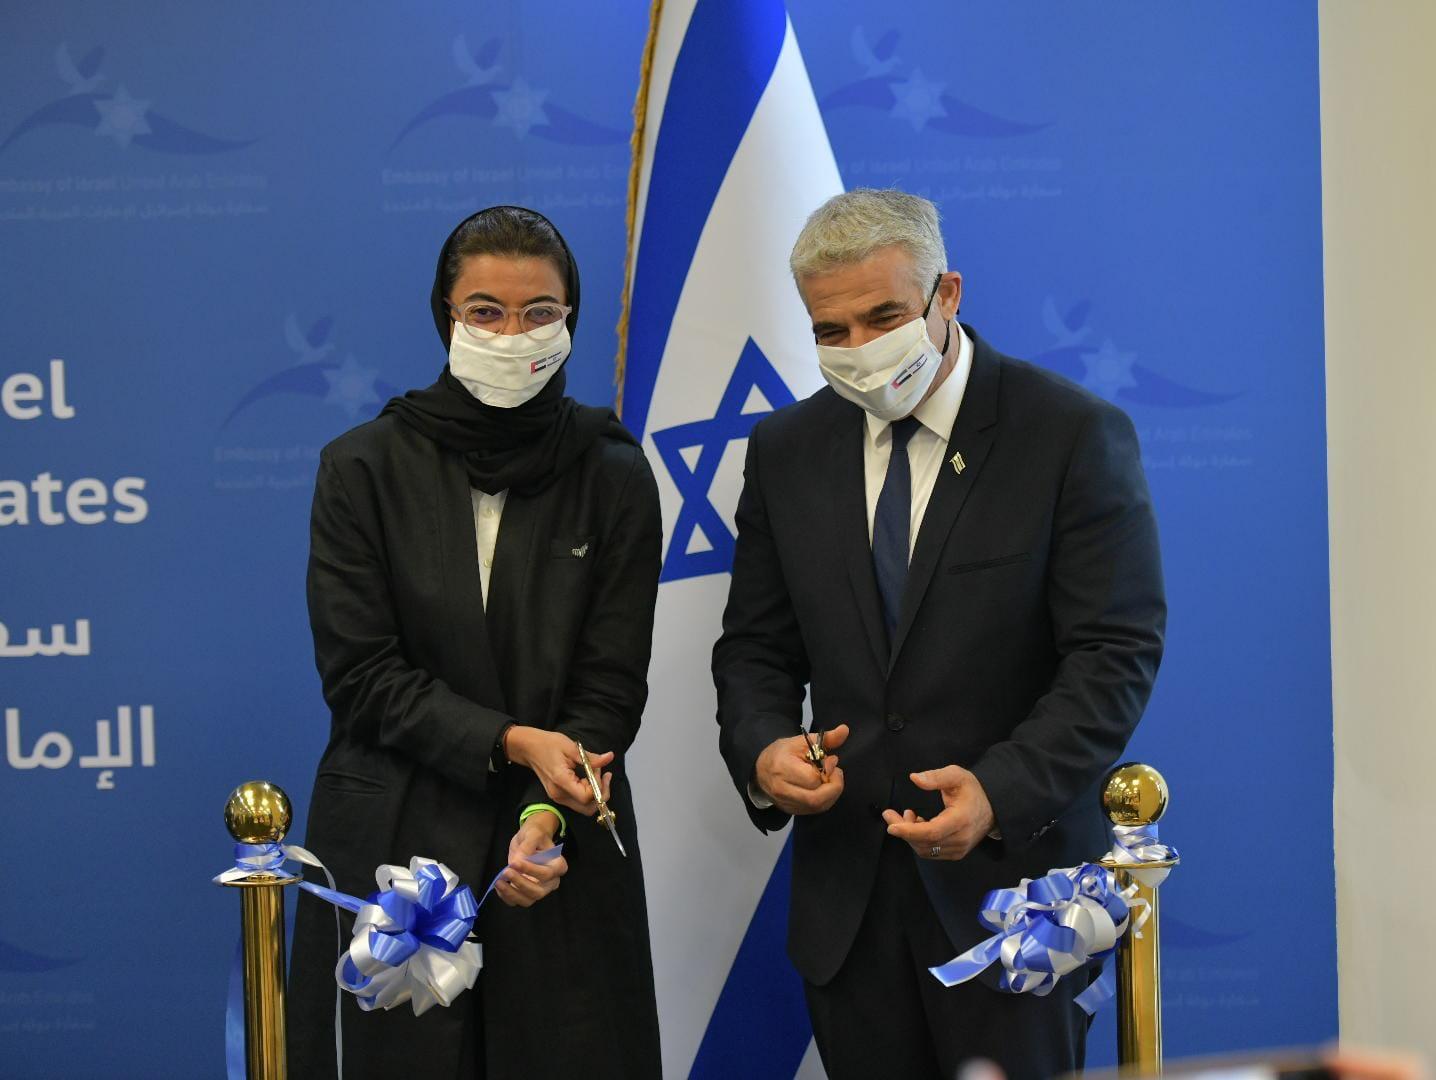 שר החוץ, יאיר לפיד חונך את שגרירות ישראל באבו דאבי / צילום: שלומי אמסלם-לע"מ